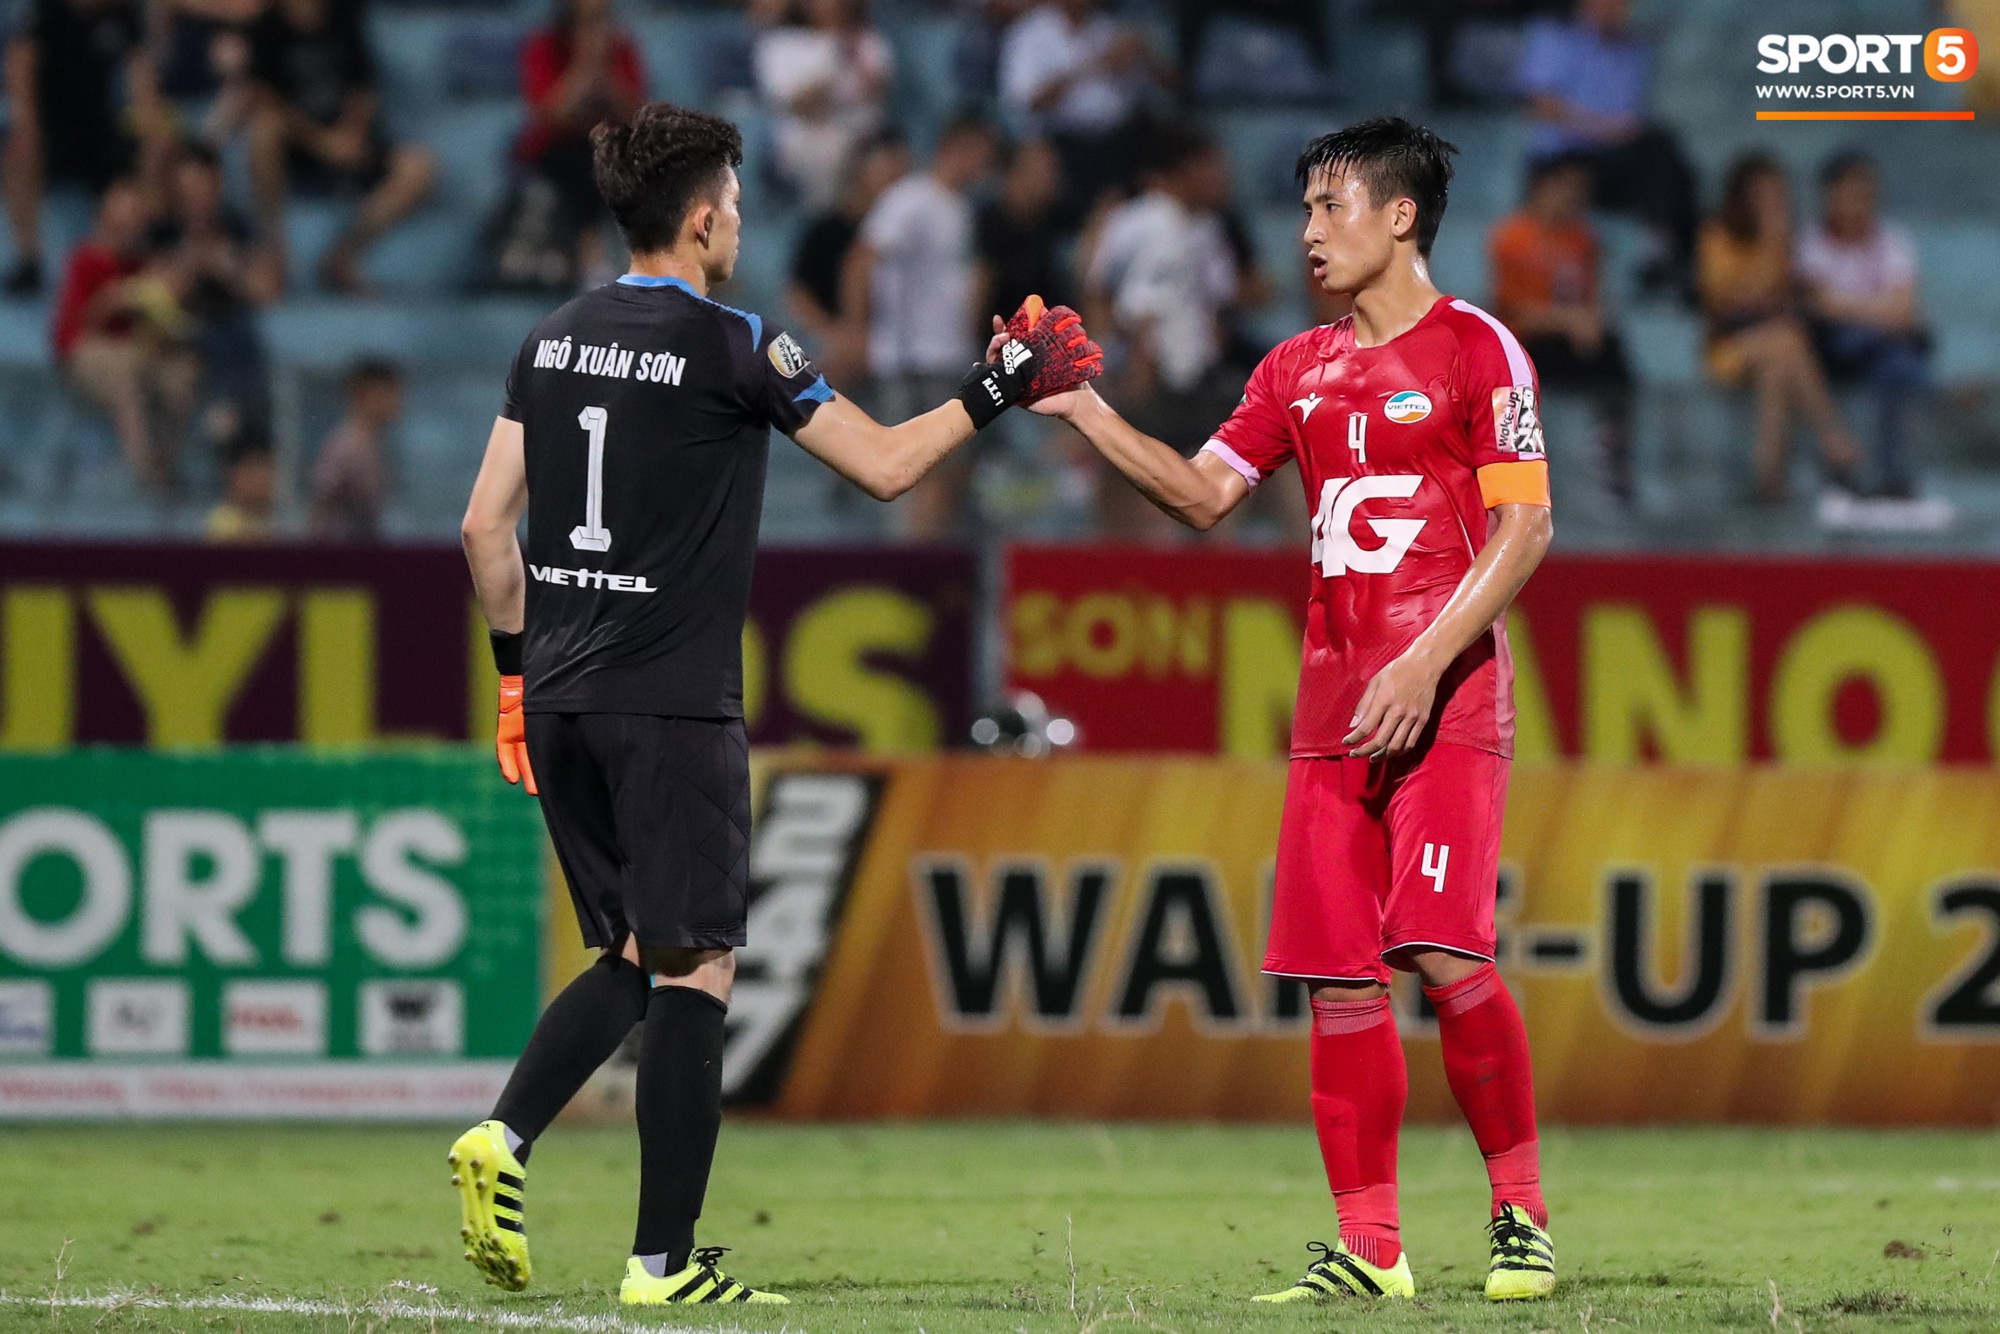 Thầy Park đầy suy tư khi chứng kiến Hải Quế, Tiến Dũng để thủng lưới tới 3 bàn trong trận đấu với Quảng Ninh - Ảnh 1.